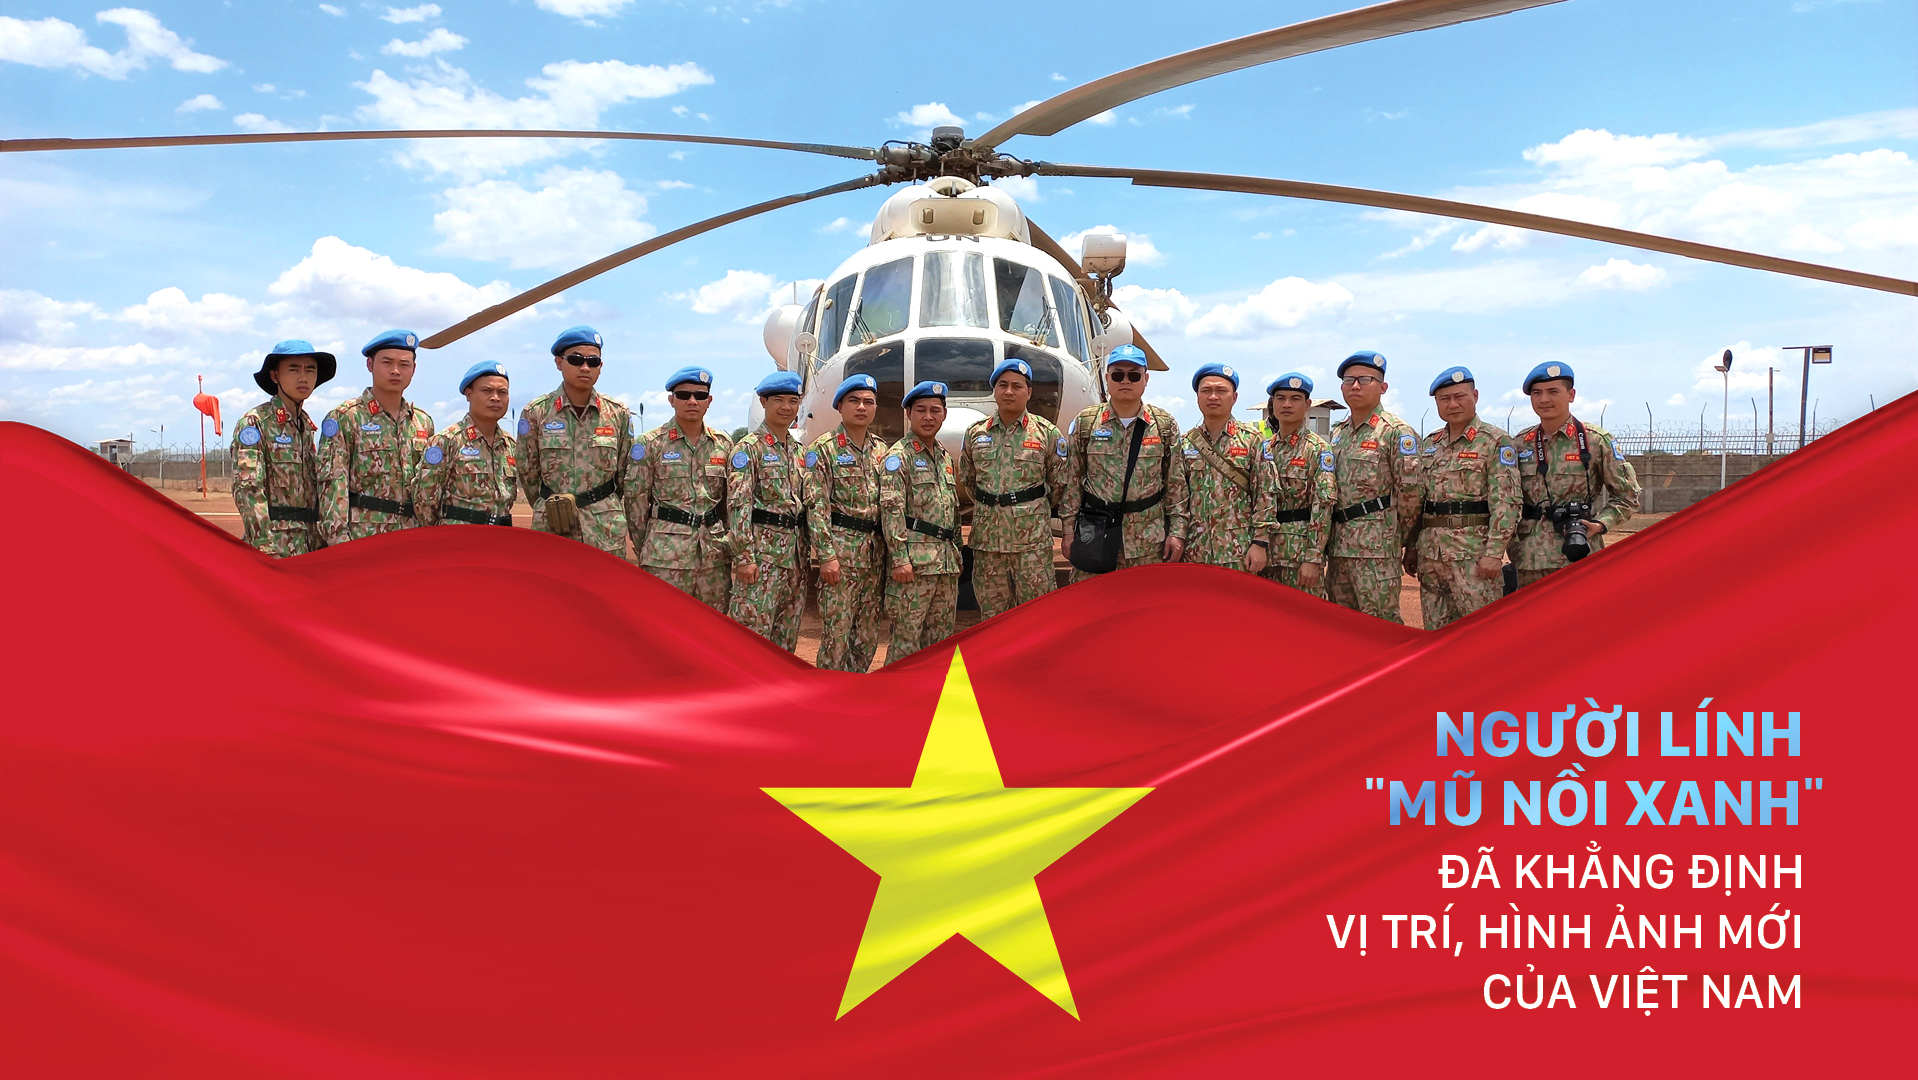 Người lính "mũ nồi xanh" đã khẳng định vị trí, hình ảnh mới của Việt Nam